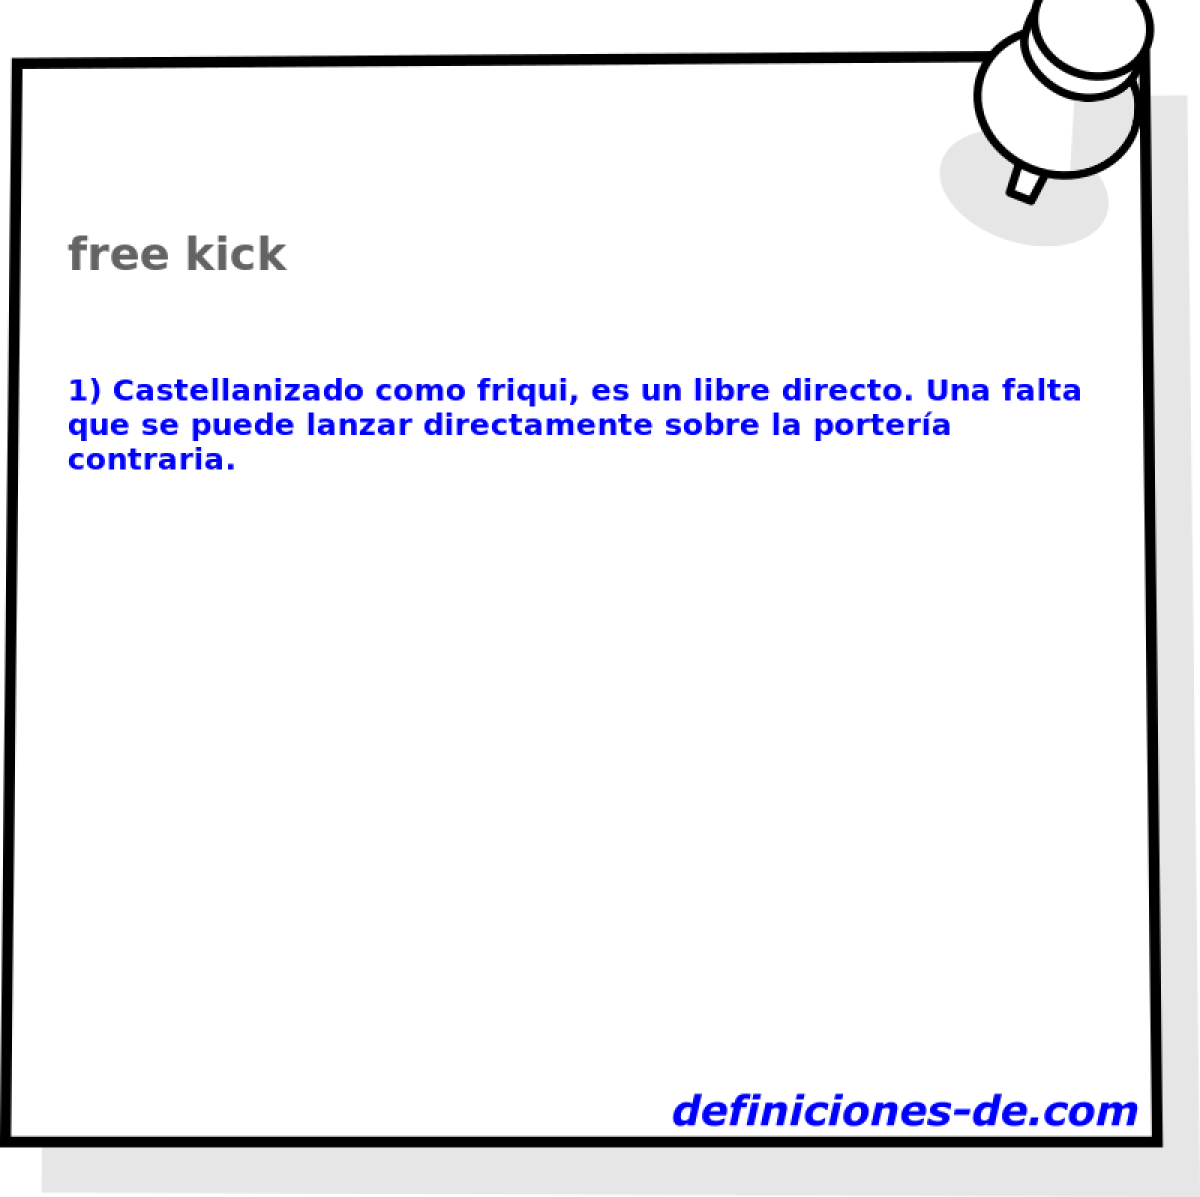 free kick 